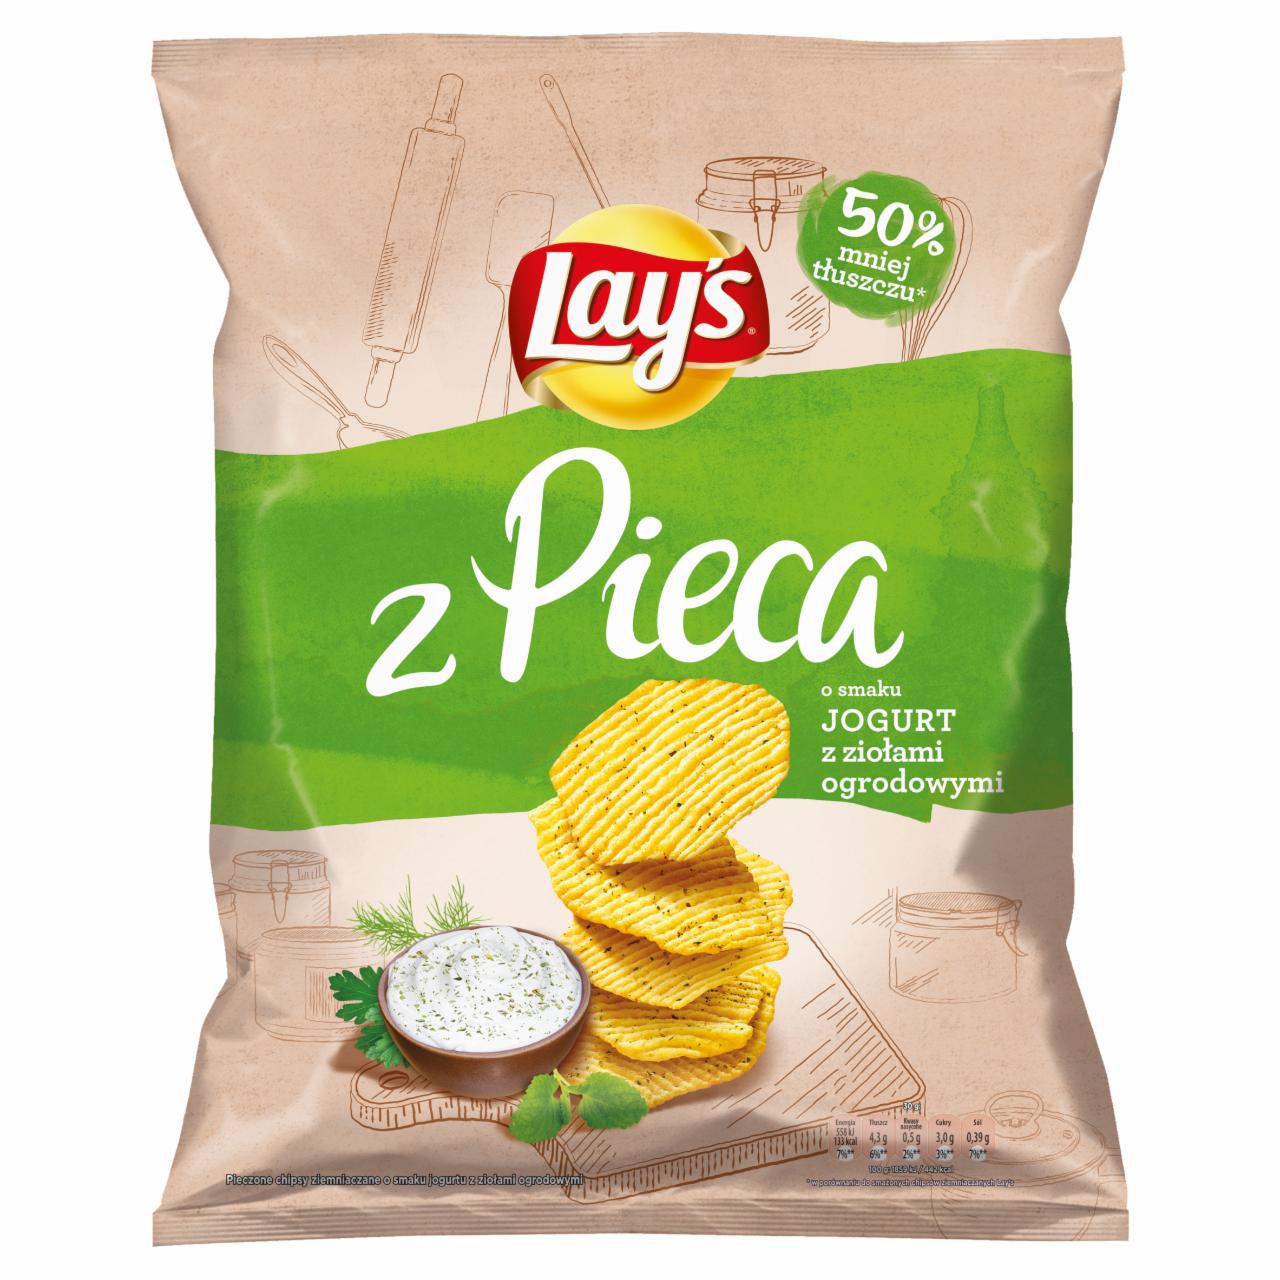 Zdjęcia - Lay's z Pieca Pieczone chipsy Jogurt z ziołami ogrodowymi 200 g